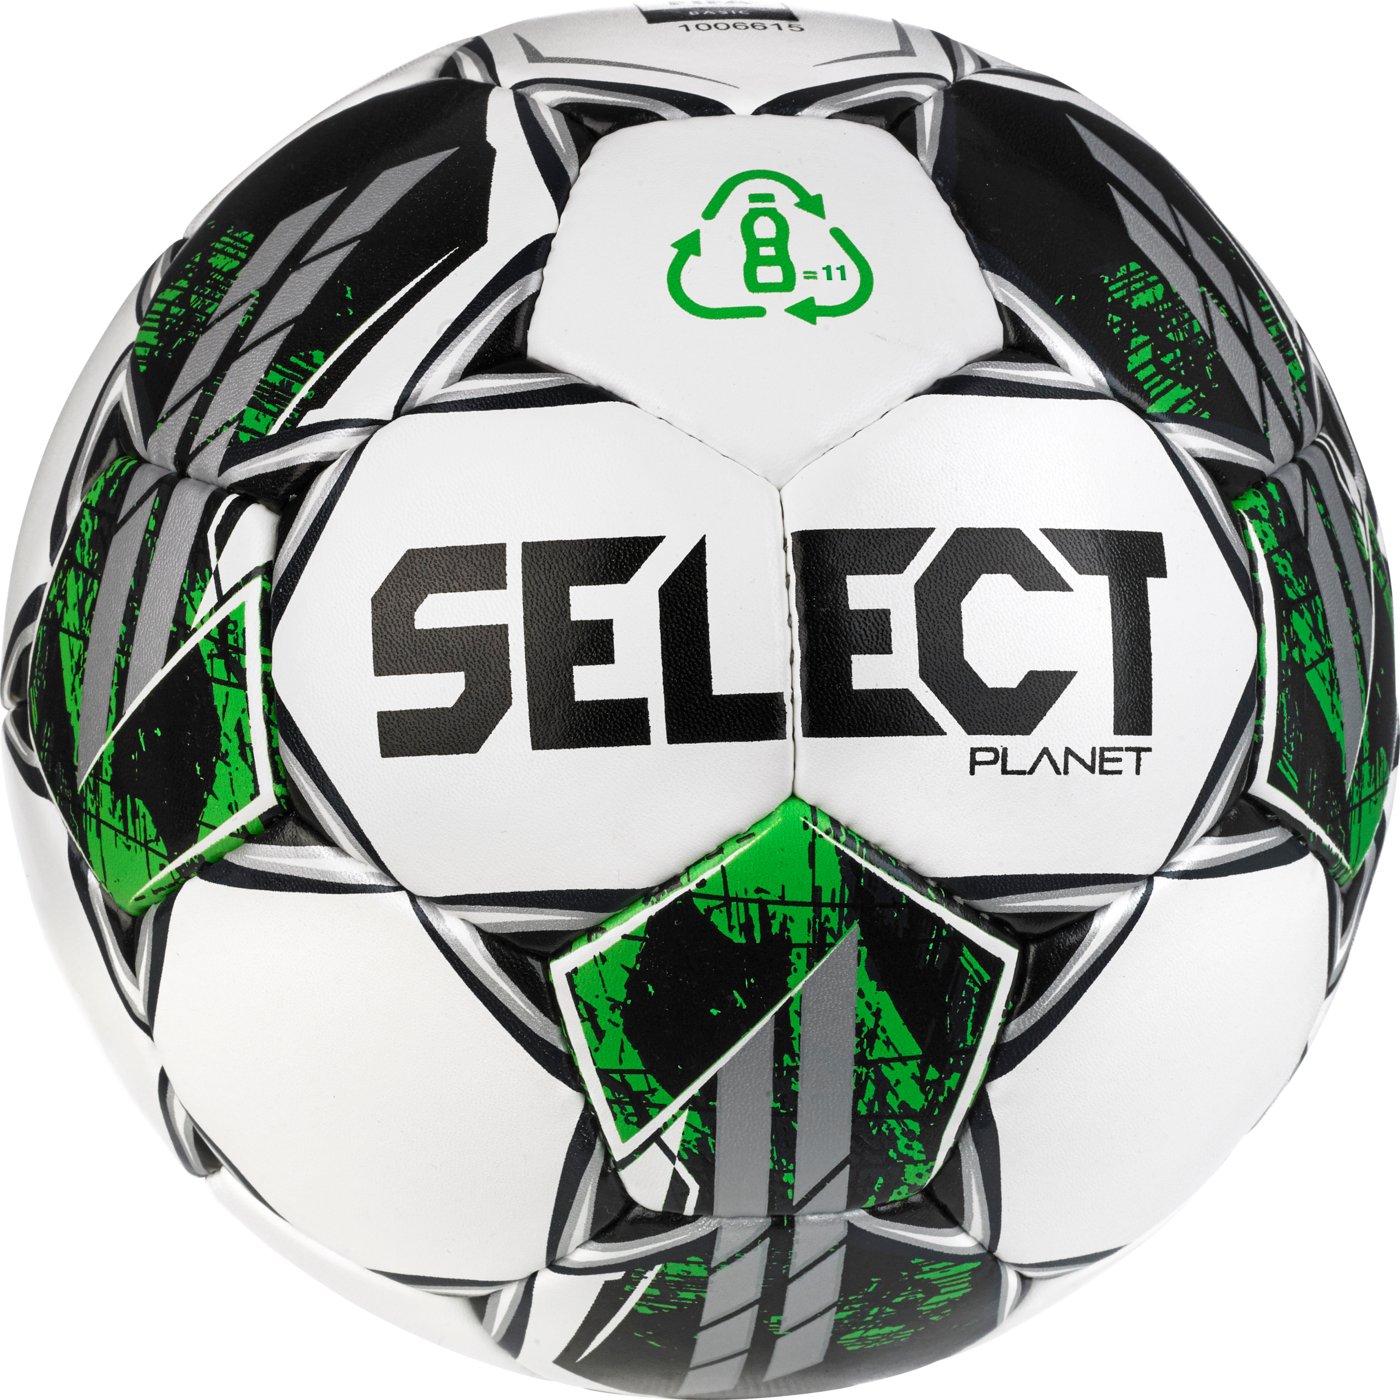 М'яч футбольний SELECT Planet FIFA Basic v23 (963) біло/зелений, 5, білий/зелений, 5